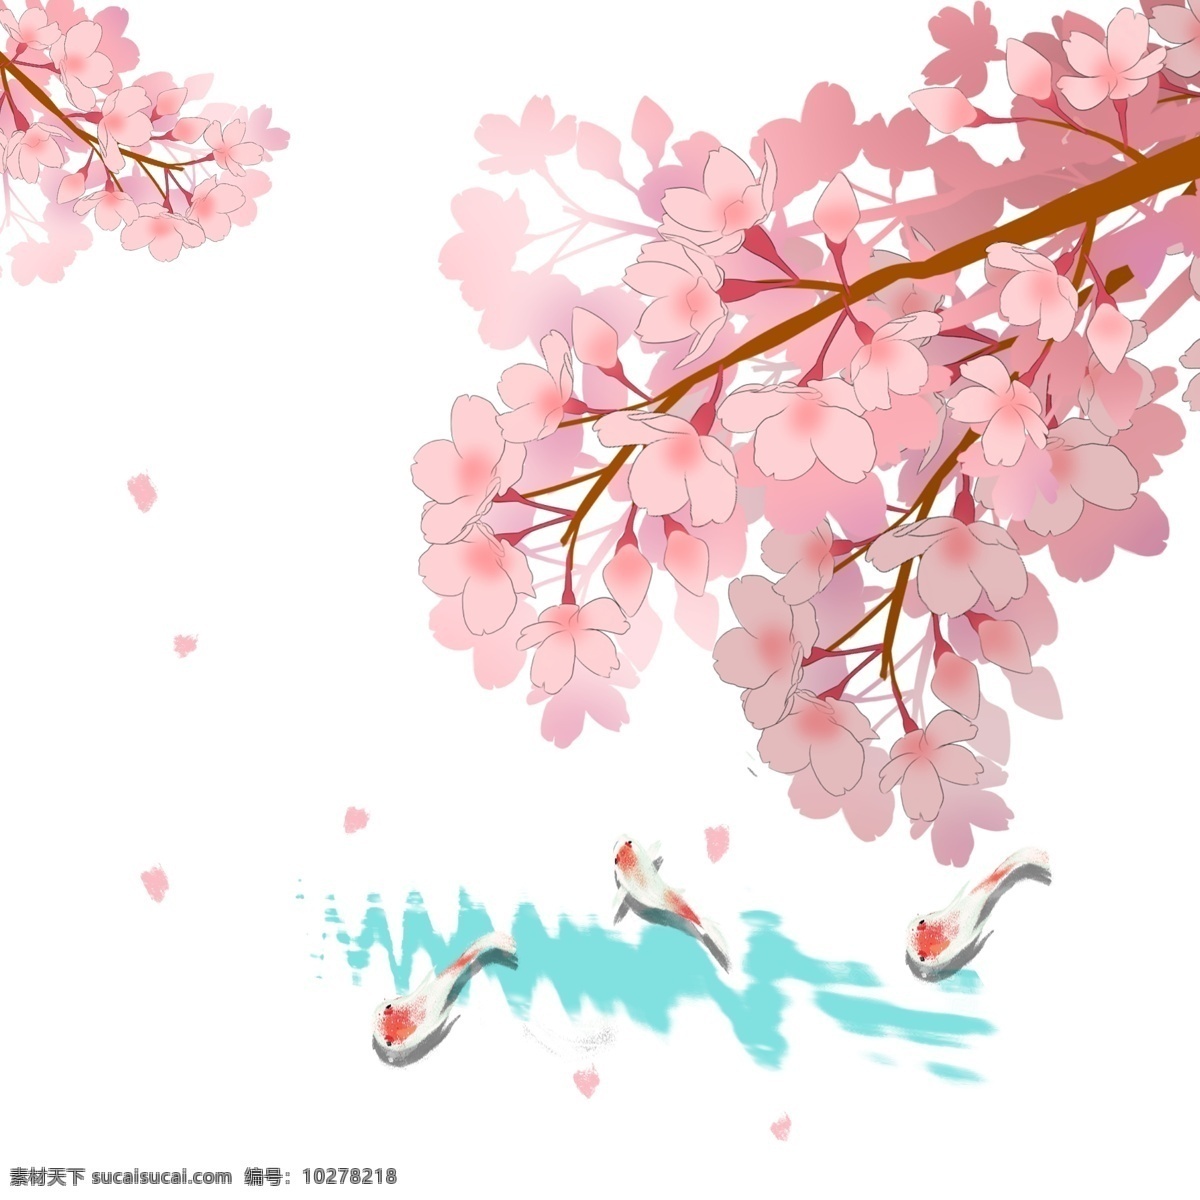 日本 樱花 锦鲤 唯美 风景 春季 春天 花卉 花朵 粉色花瓣 樱花树 树枝 观赏樱花 手绘樱花 水纹 波浪 池塘景致